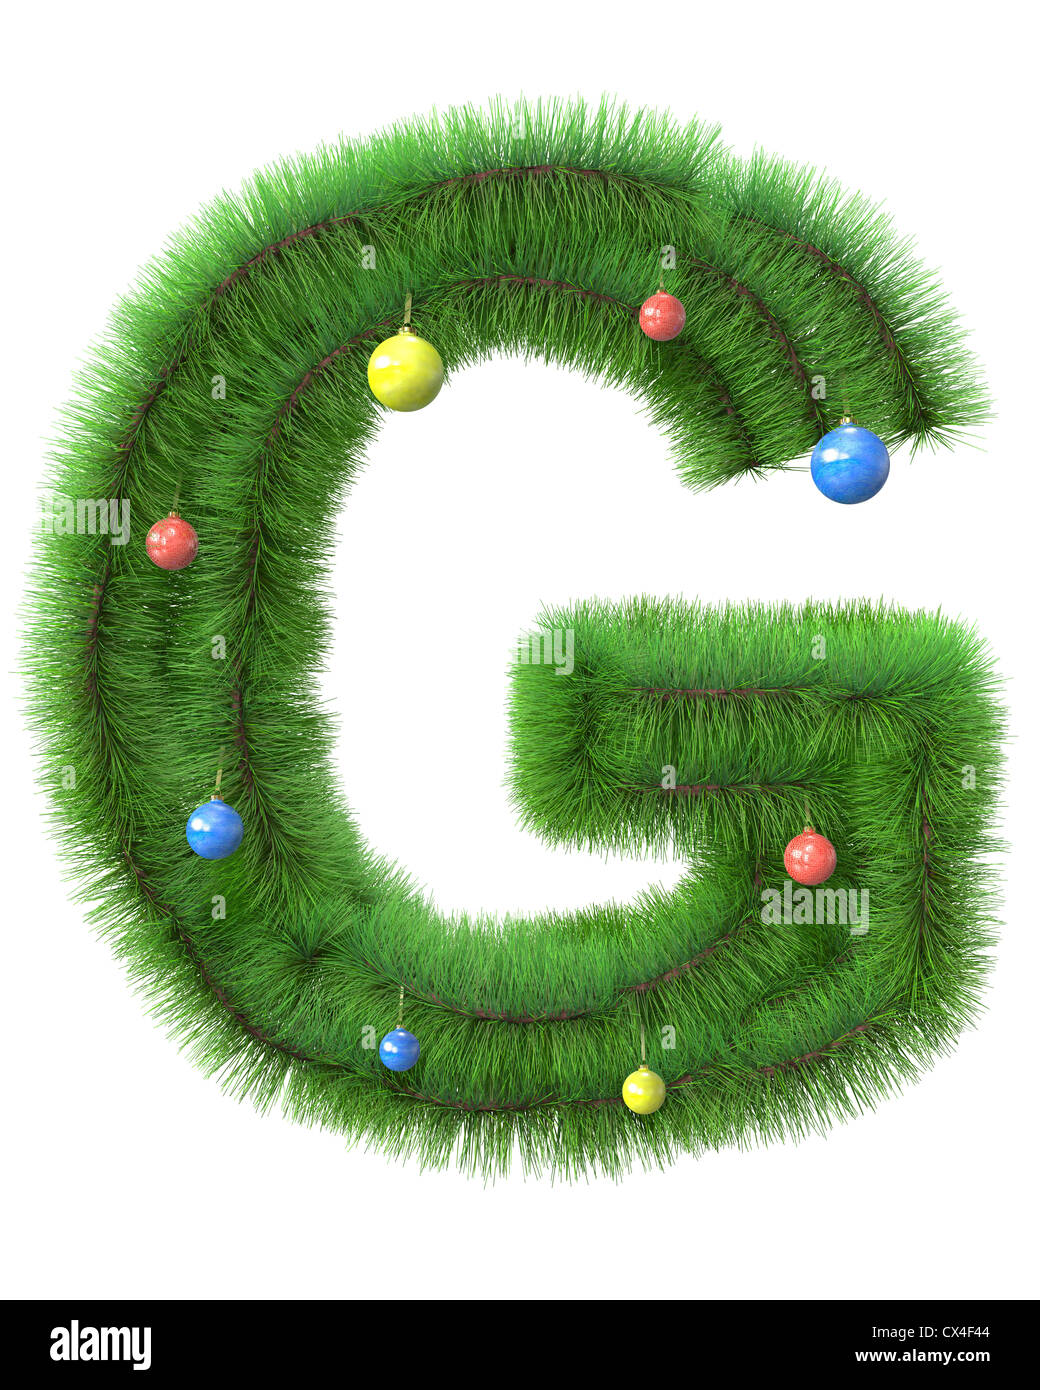 Lettre G faite de branches d'arbre de Noël isolé sur fond blanc Banque D'Images